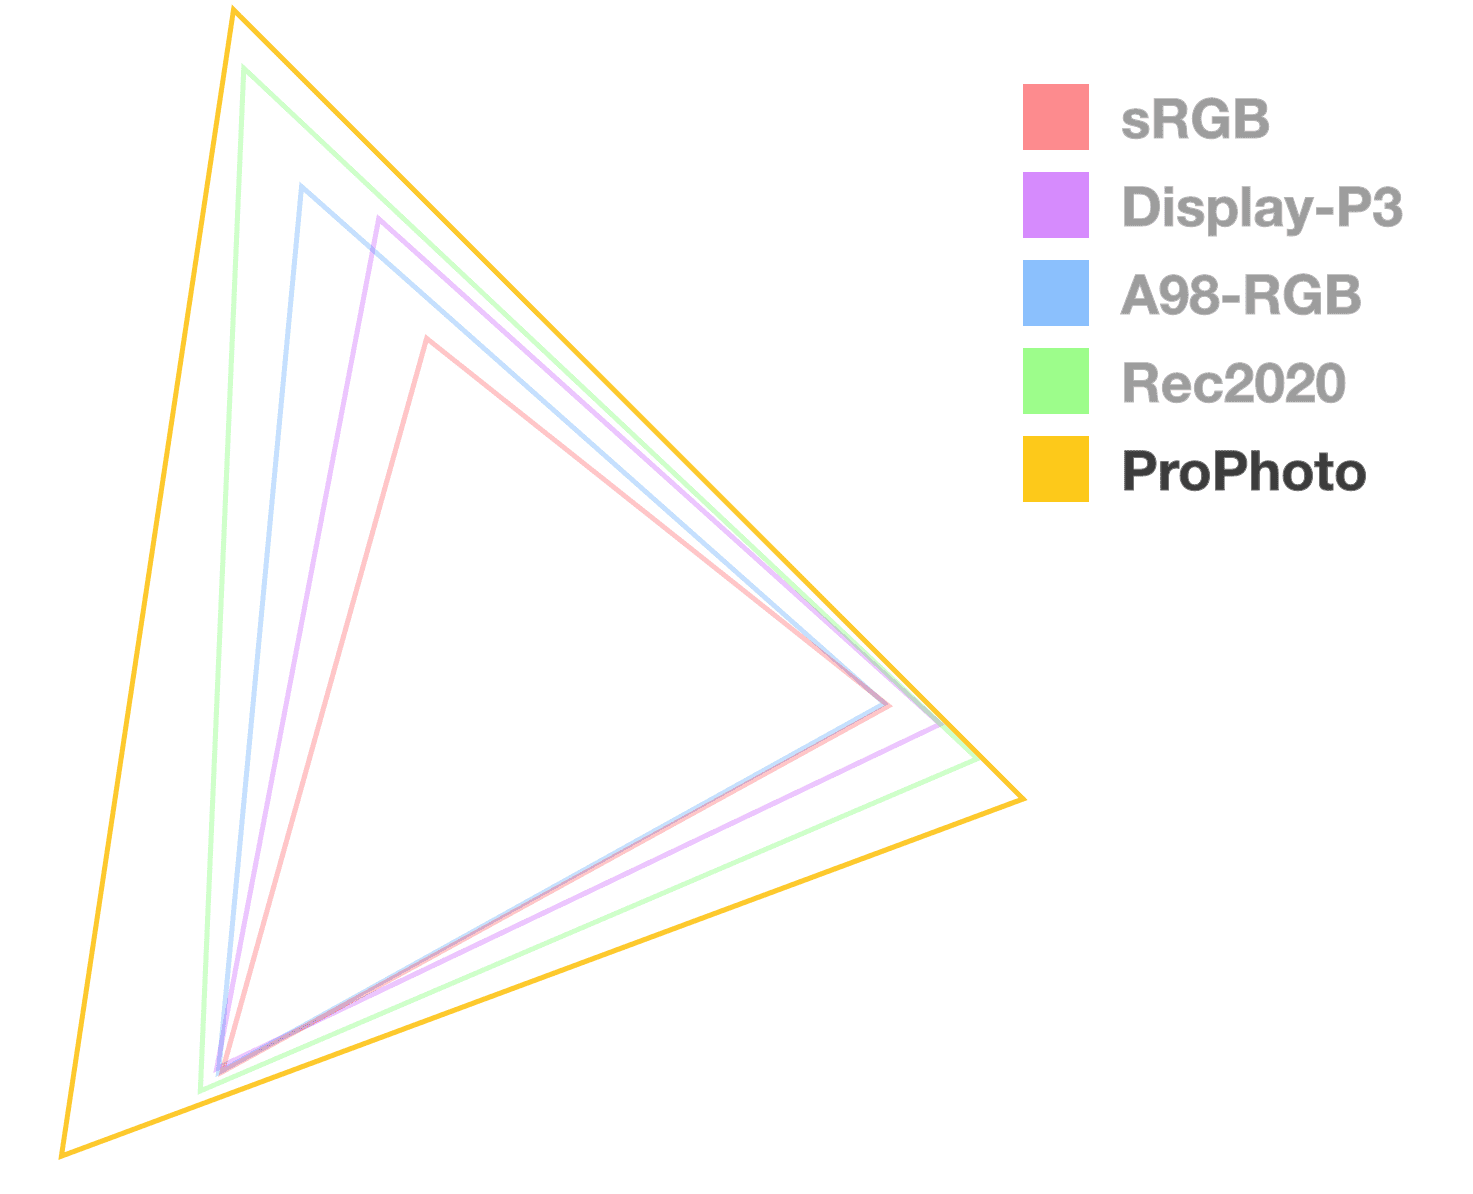 गैमट के साइज़ को विज़ुअलाइज़ करने में मदद करने के लिए, ProPhotos त्रिभुज सिर्फ़ एक पूरी तरह से ओपेक है. यह सबसे बड़ा लग रहा है.